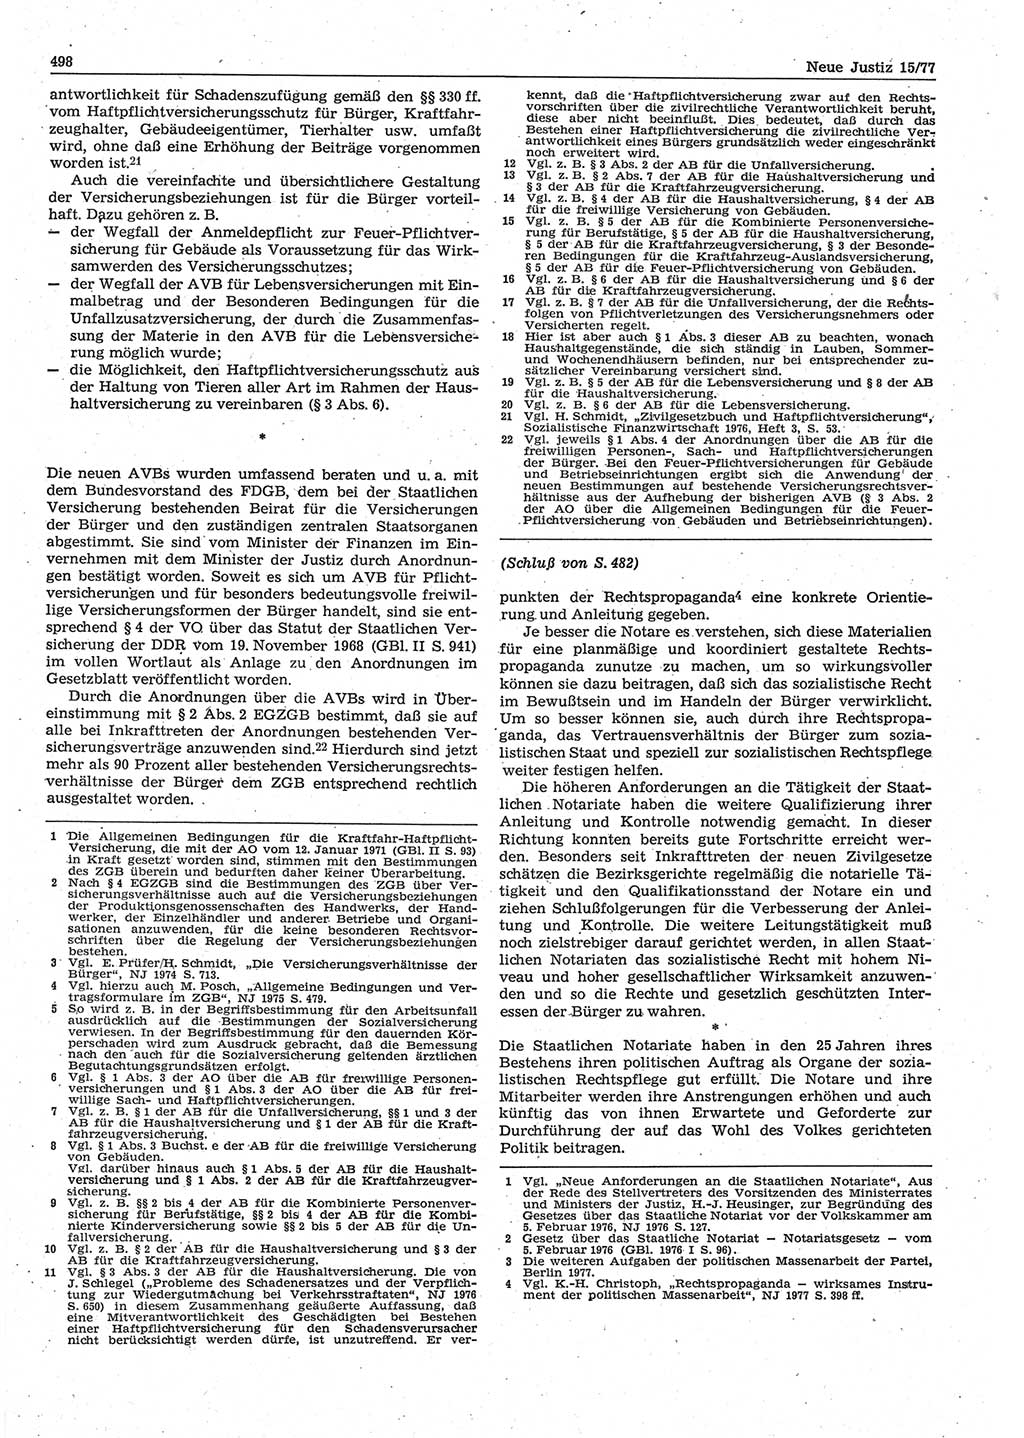 Neue Justiz (NJ), Zeitschrift für Recht und Rechtswissenschaft-Zeitschrift, sozialistisches Recht und Gesetzlichkeit, 31. Jahrgang 1977, Seite 498 (NJ DDR 1977, S. 498)